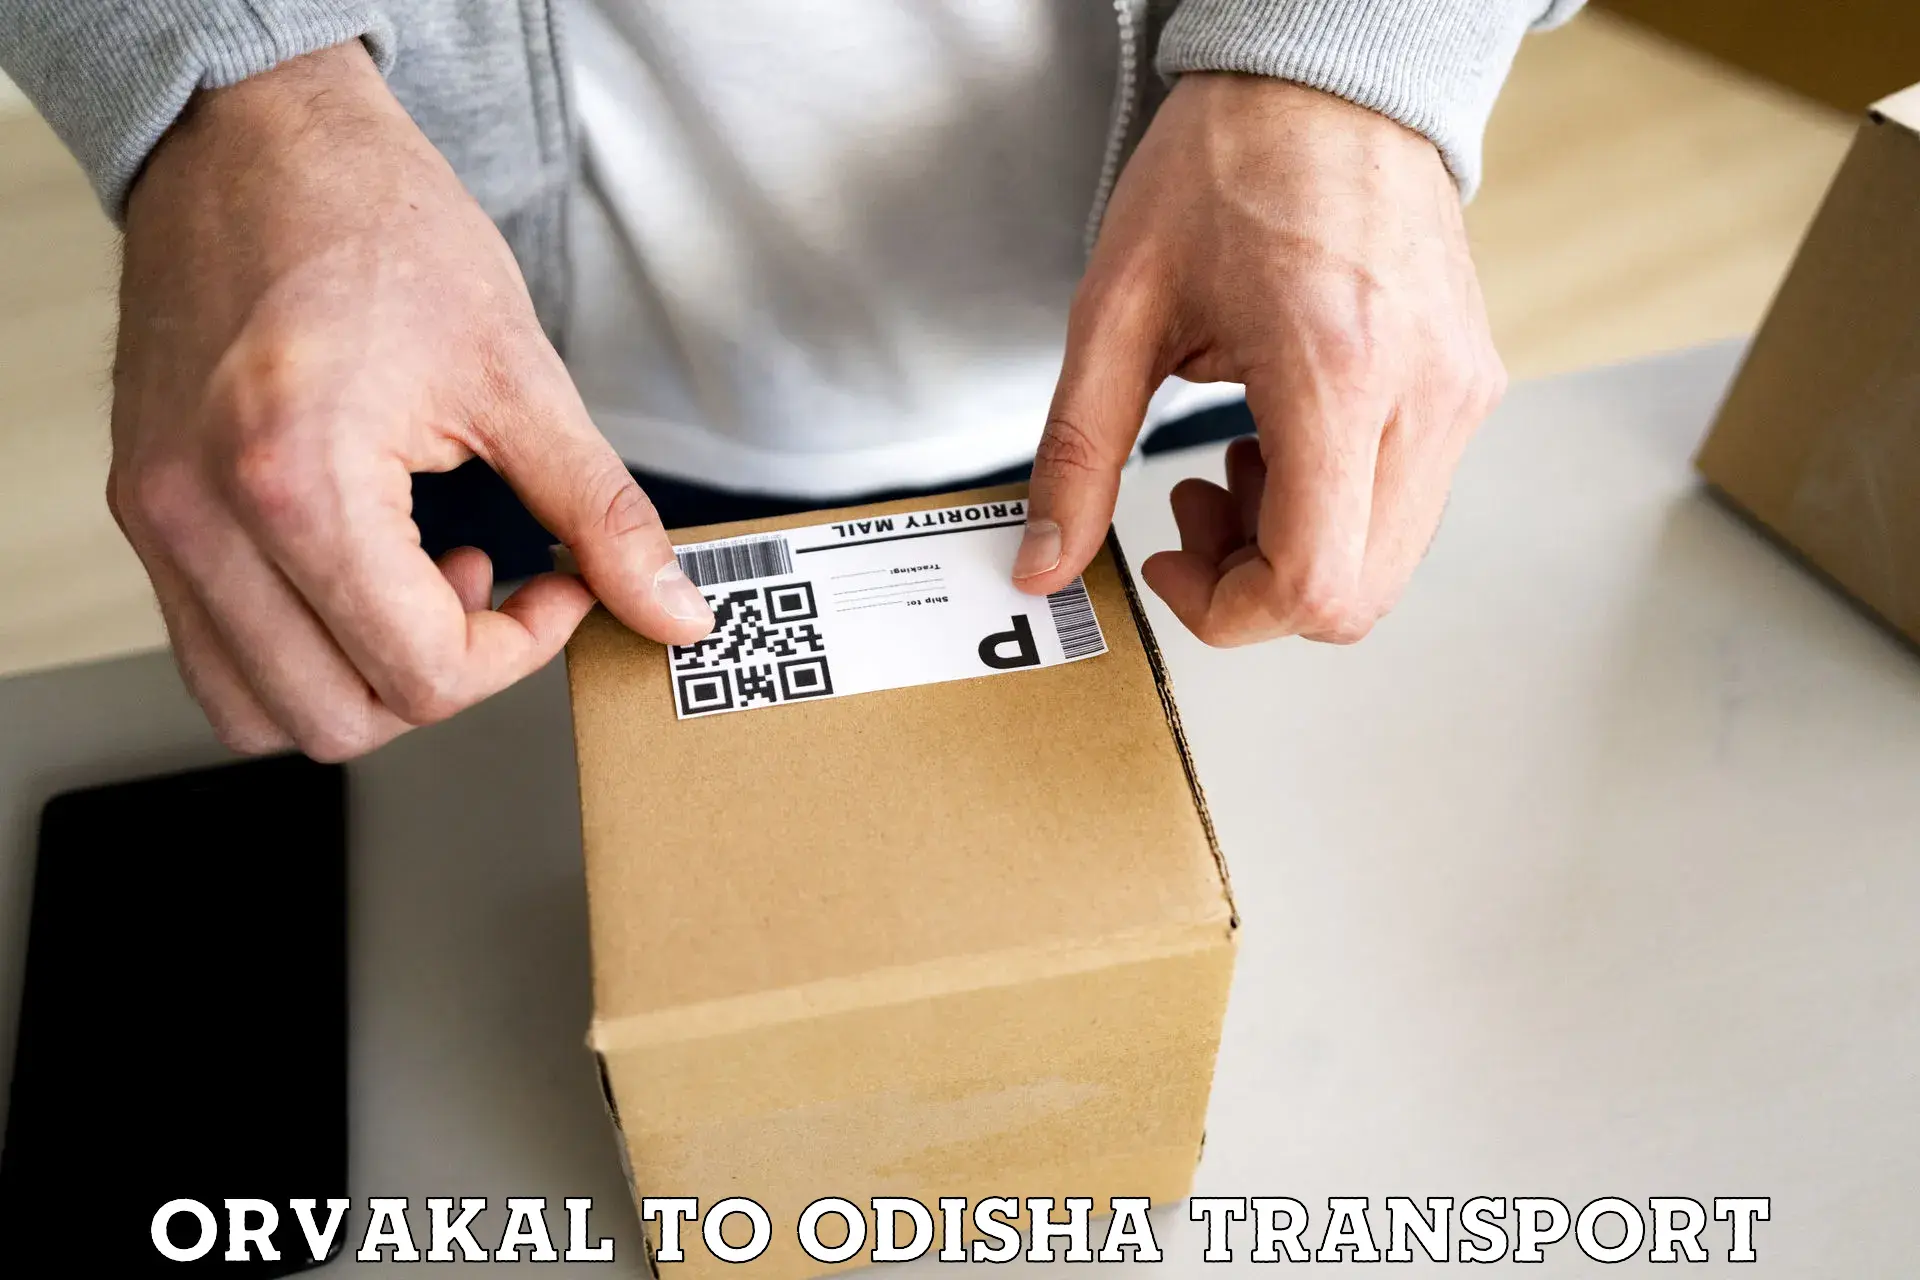 Nationwide transport services Orvakal to Tikiri